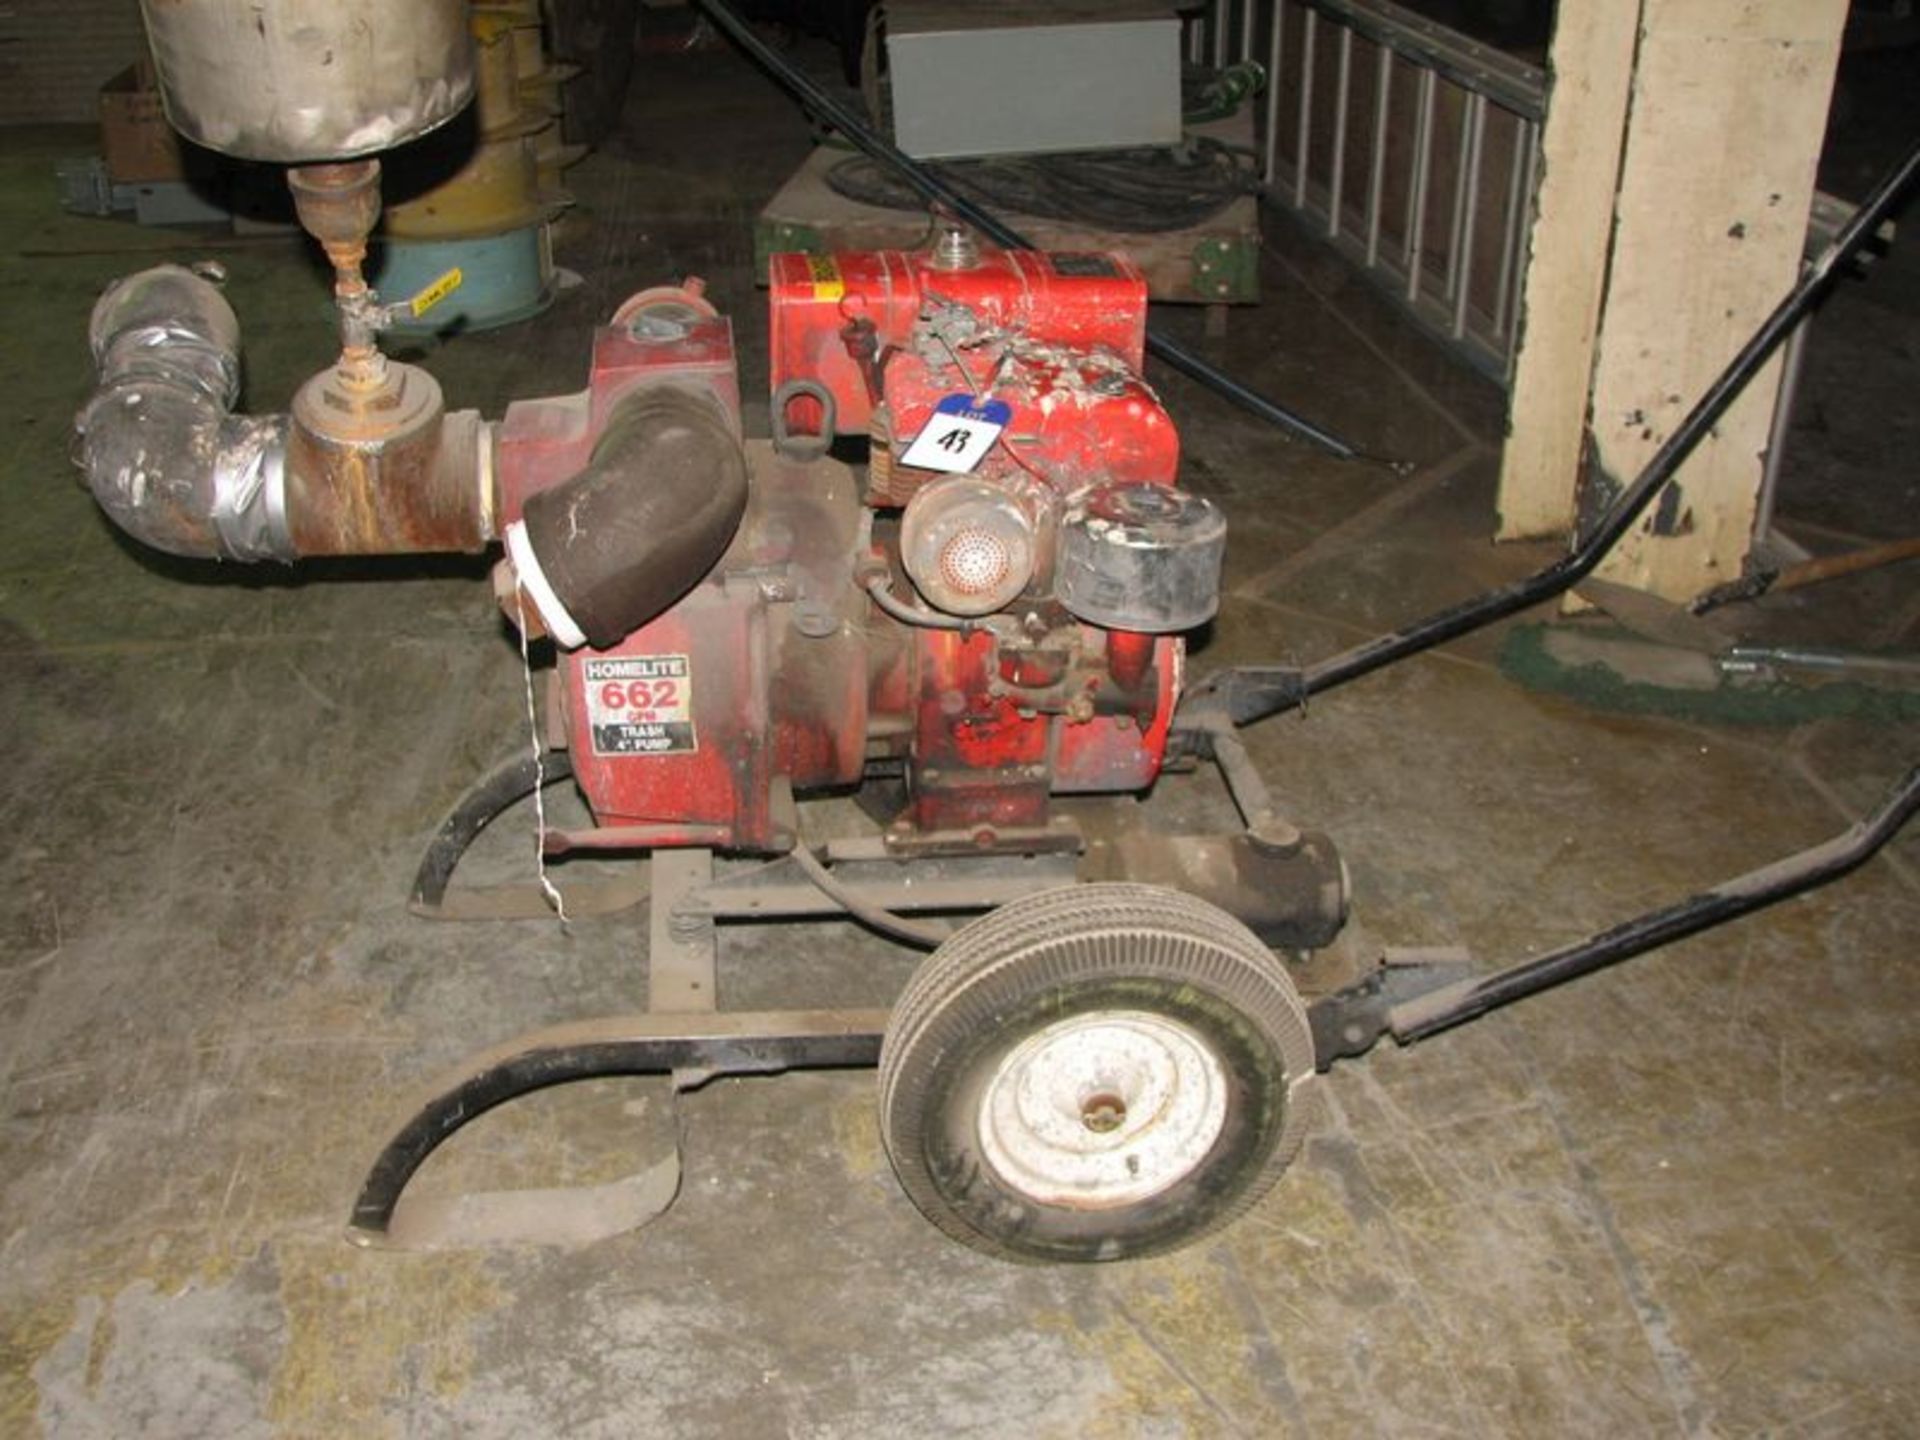 Homelite 4" gas powered trash pump, M/N 1601 PA 10, S/N 58003, 662 gpm, mobile